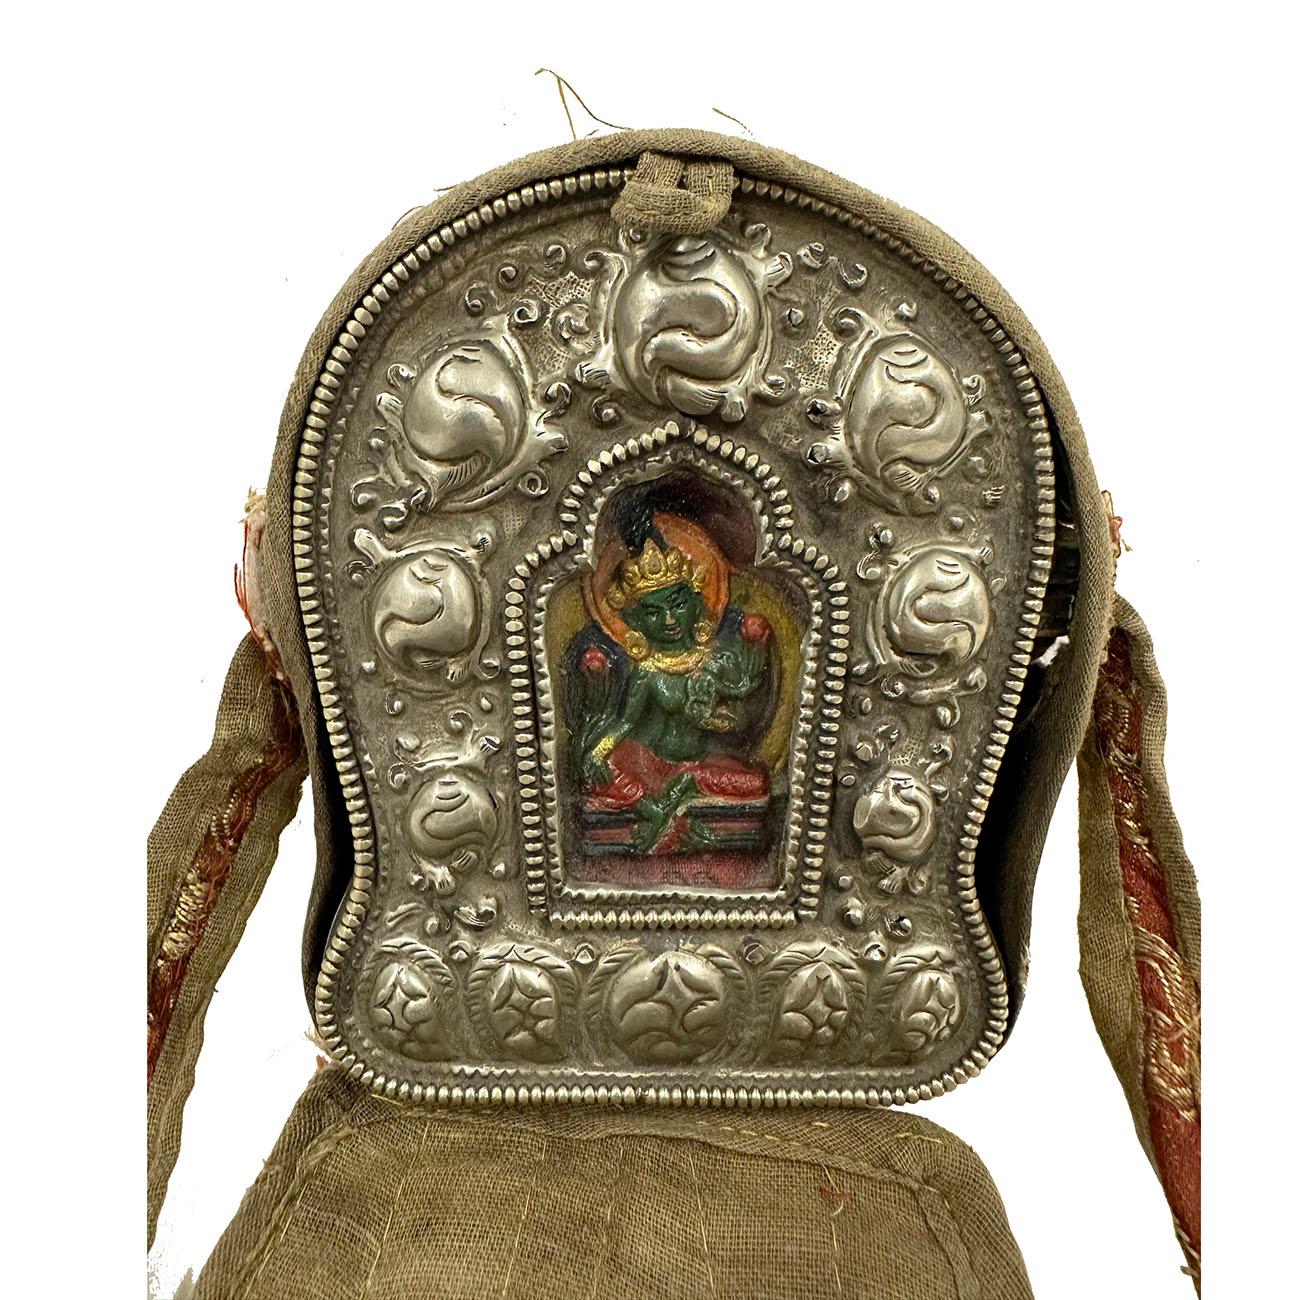 Le ghau est une petite boîte à prières portée en pendentif par les bouddhistes comme un sanctuaire portatif qui peut être prié au cours de leurs déplacements. Cette boîte à prières Ghau (sanctuaire de Bouddha de voyage) en argent tibétain contient